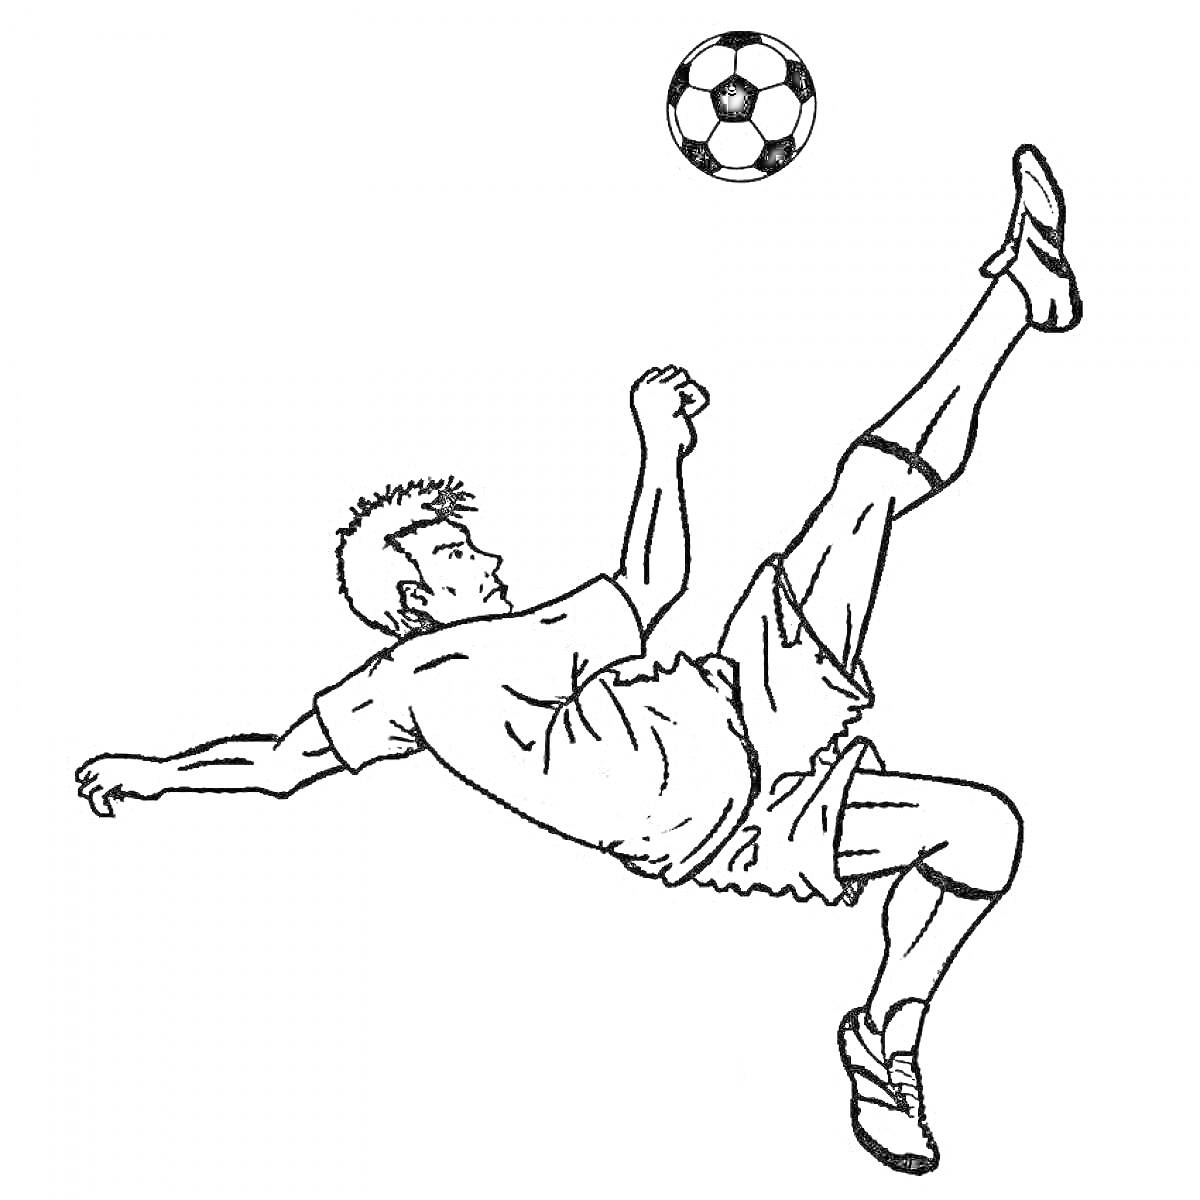 Раскраска Футболист в прыжке выполняет удар через себя, над ним летит футбольный мяч